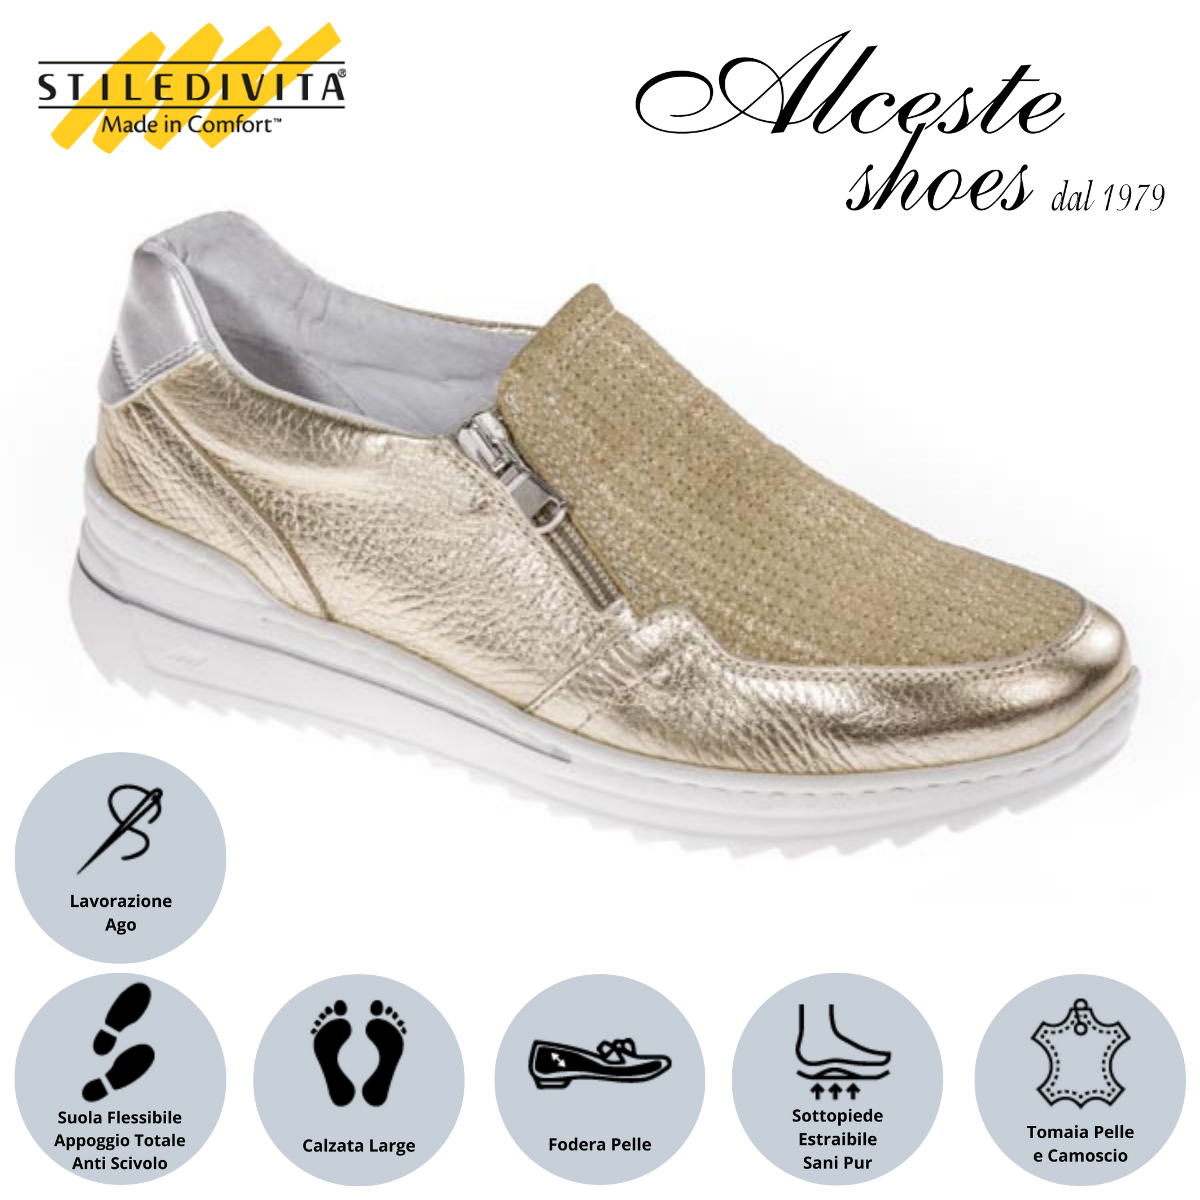 Sneakers con Cerniera Donna "Stiledivita" Art. 7420 Pelle Oro e Camoscio Beige Alceste Shoes 37 1